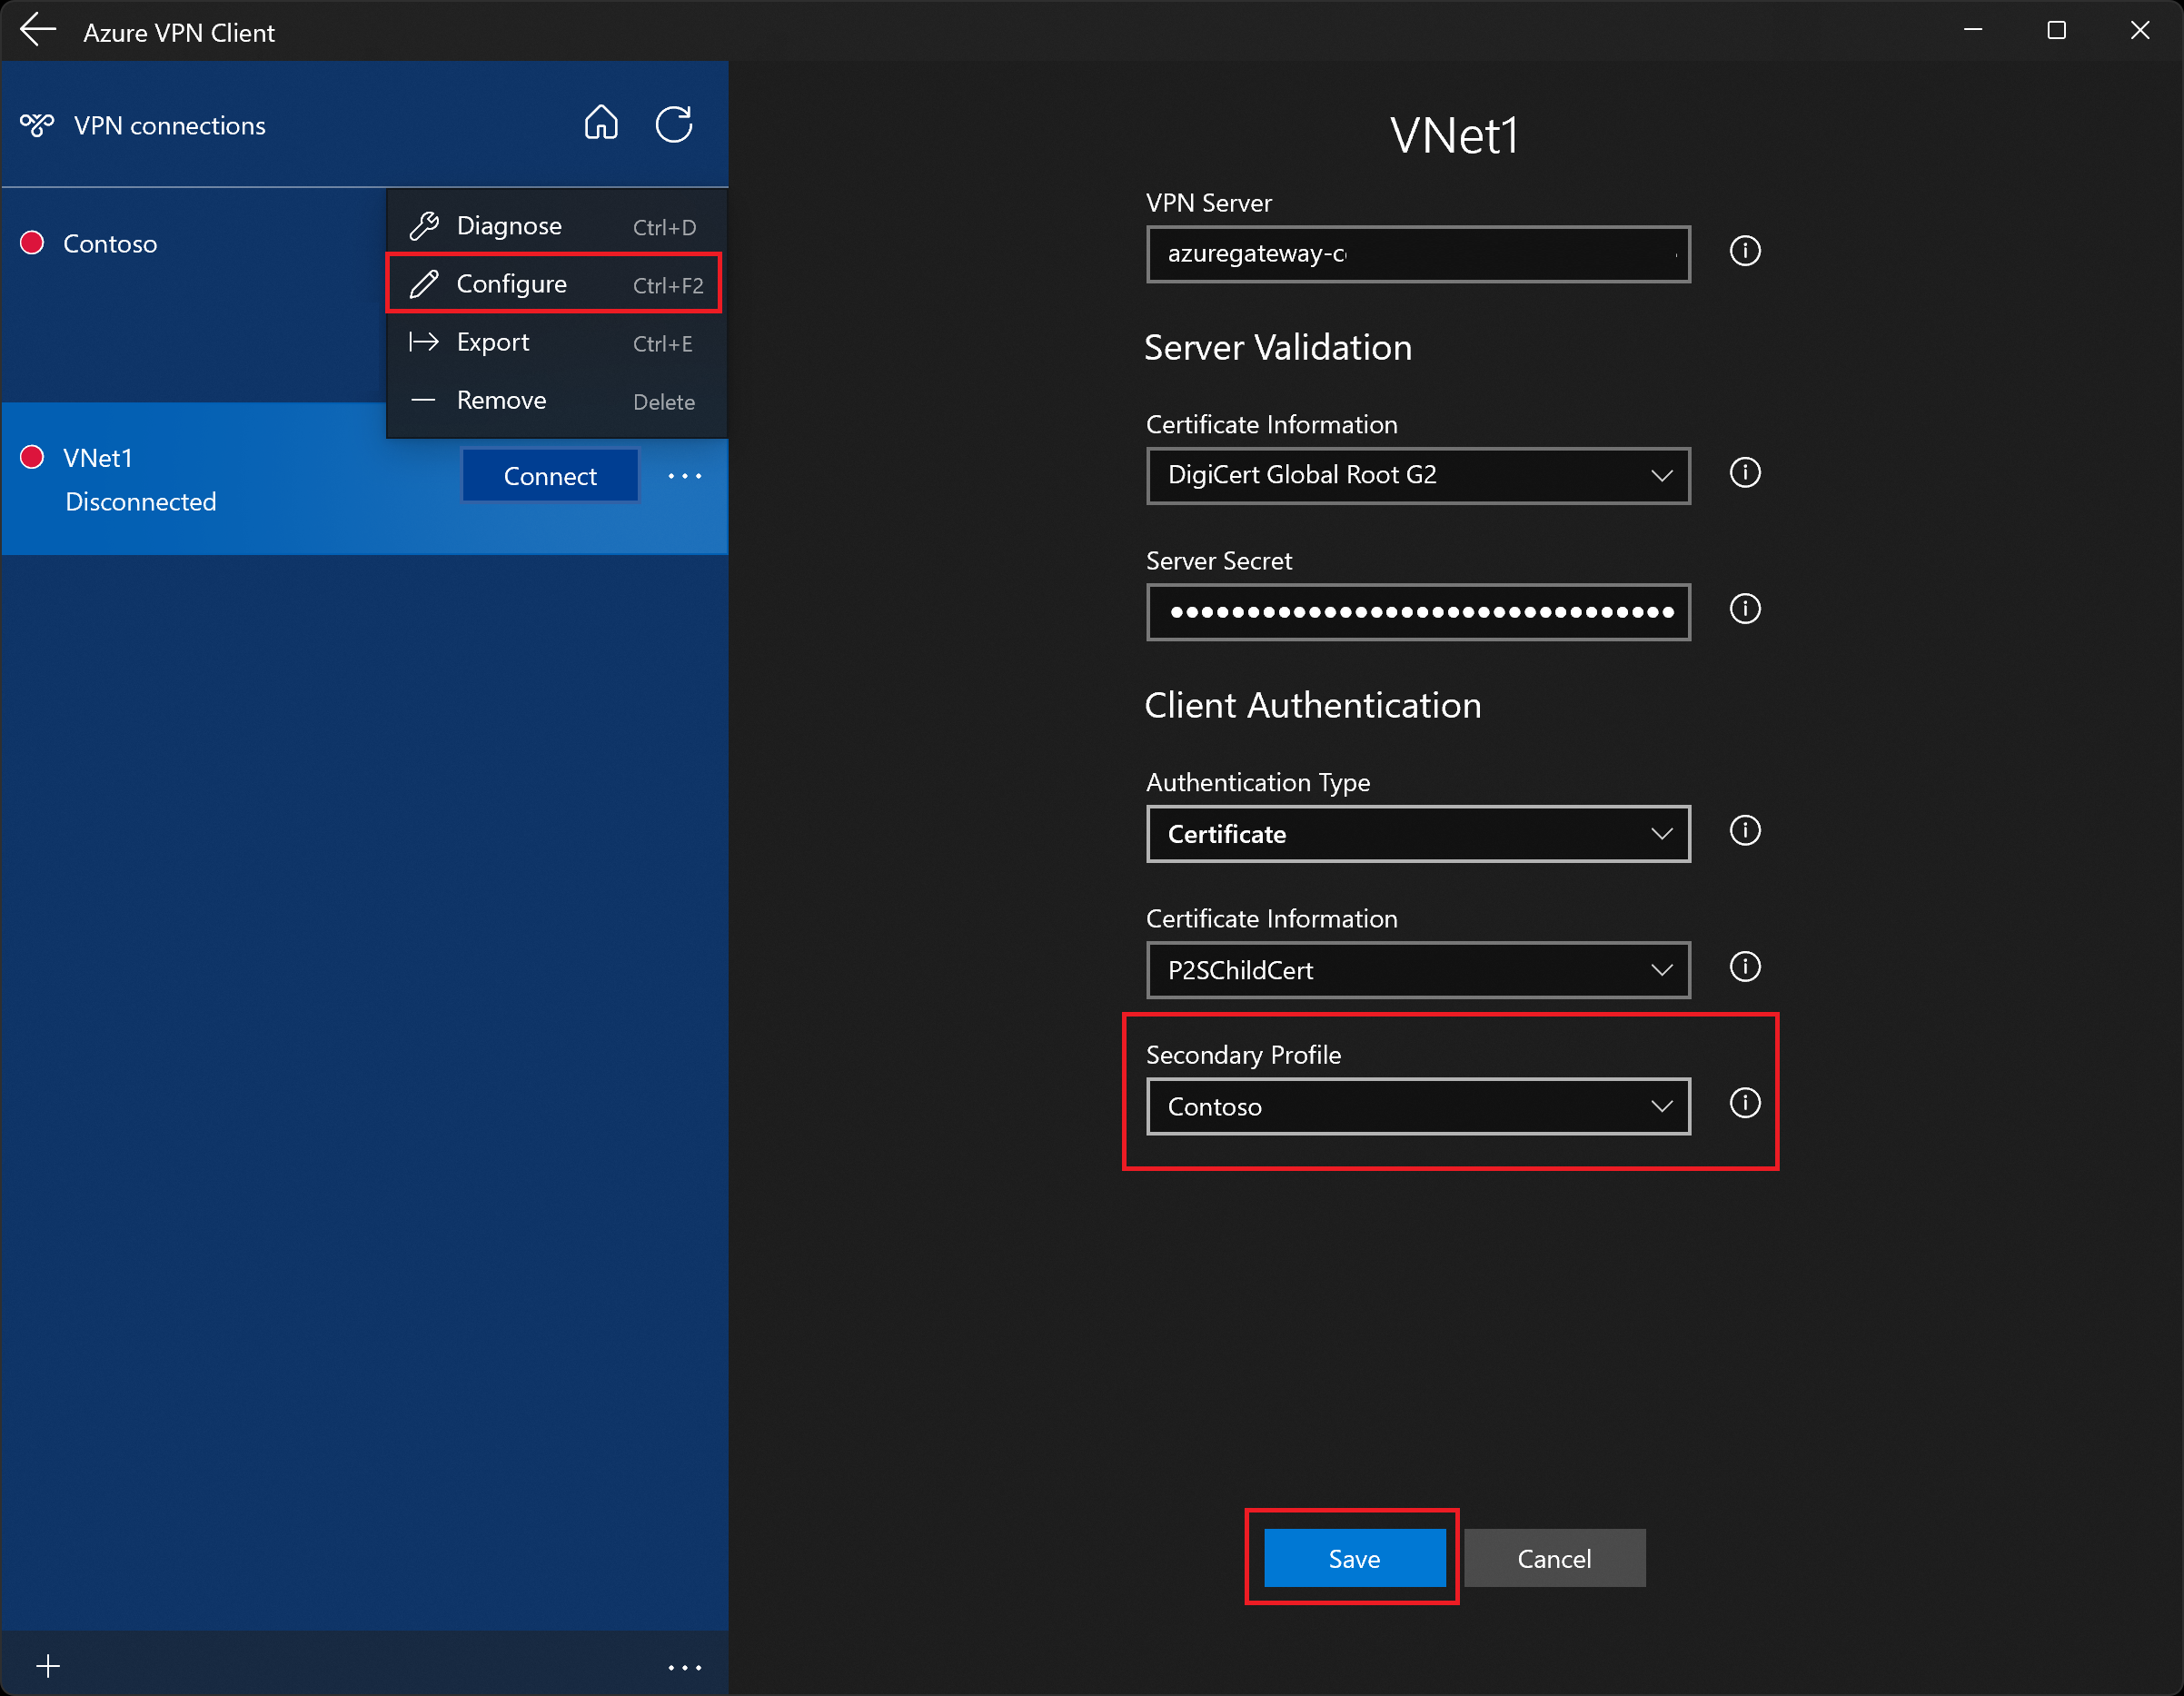 لقطة شاشة تعرض صفحة تكوين ملف تعريف عميل Azure VPN مع ملف تعريف ثانوي.